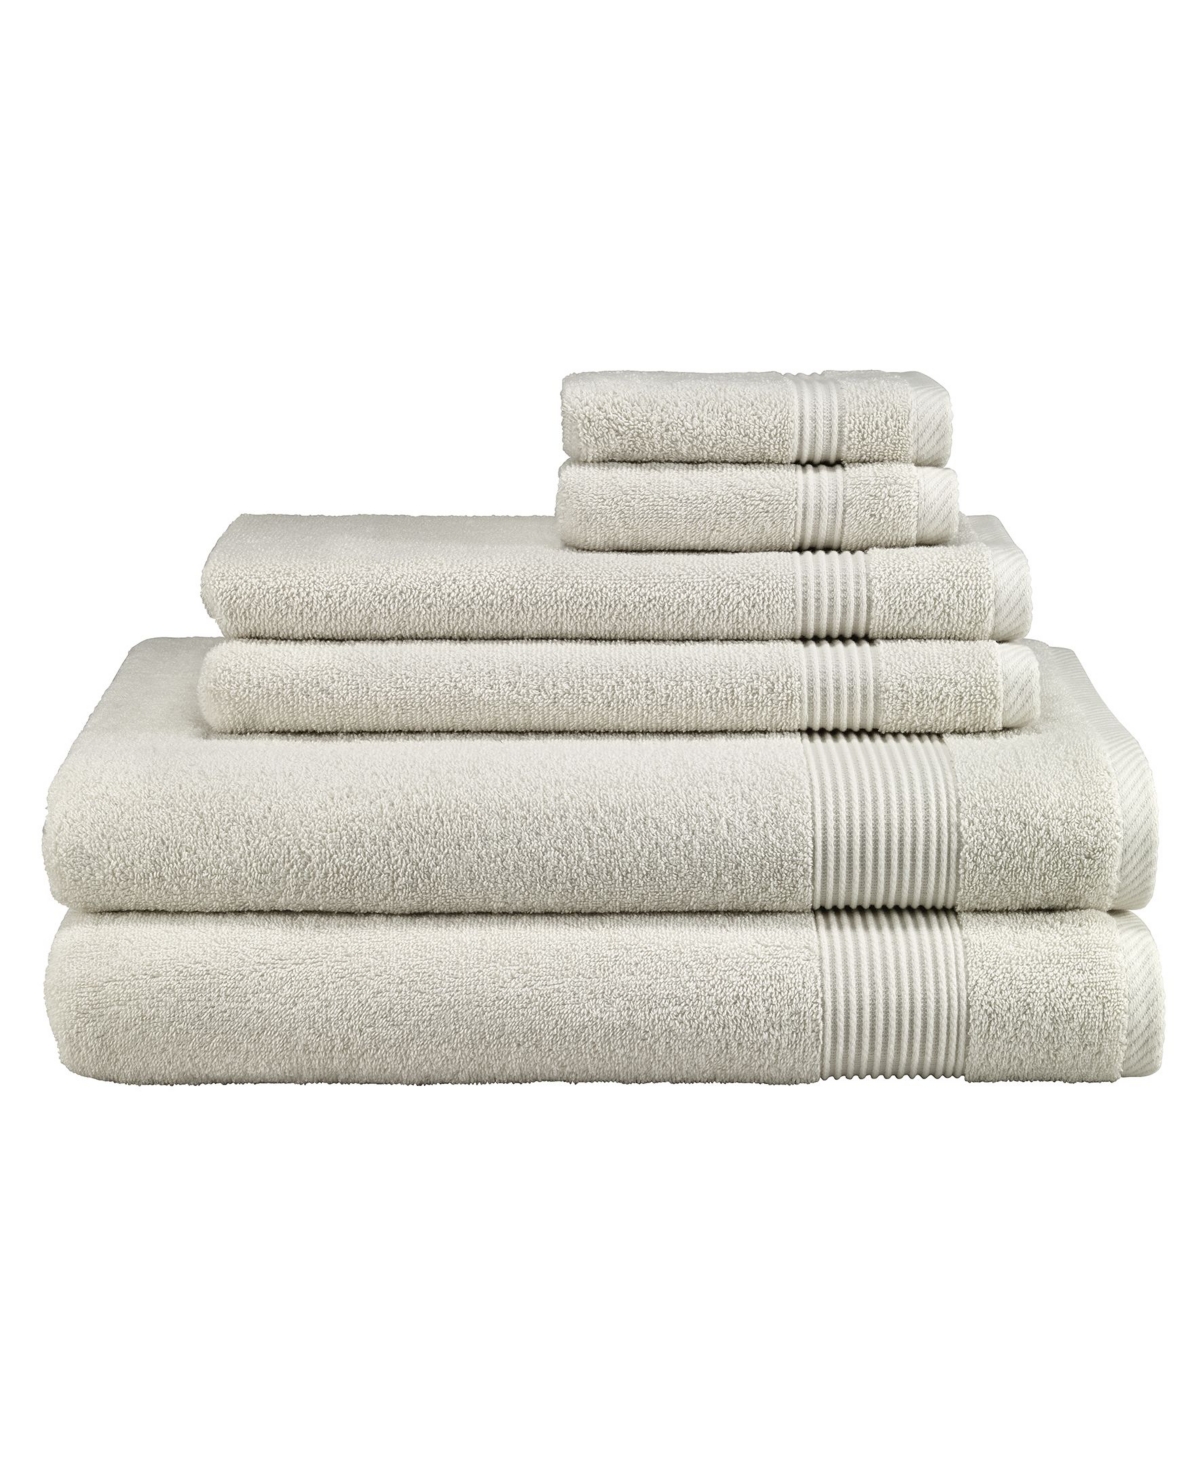 11955291 Avanti Solid 6 Piece Towel Sets Bedding sku 11955291